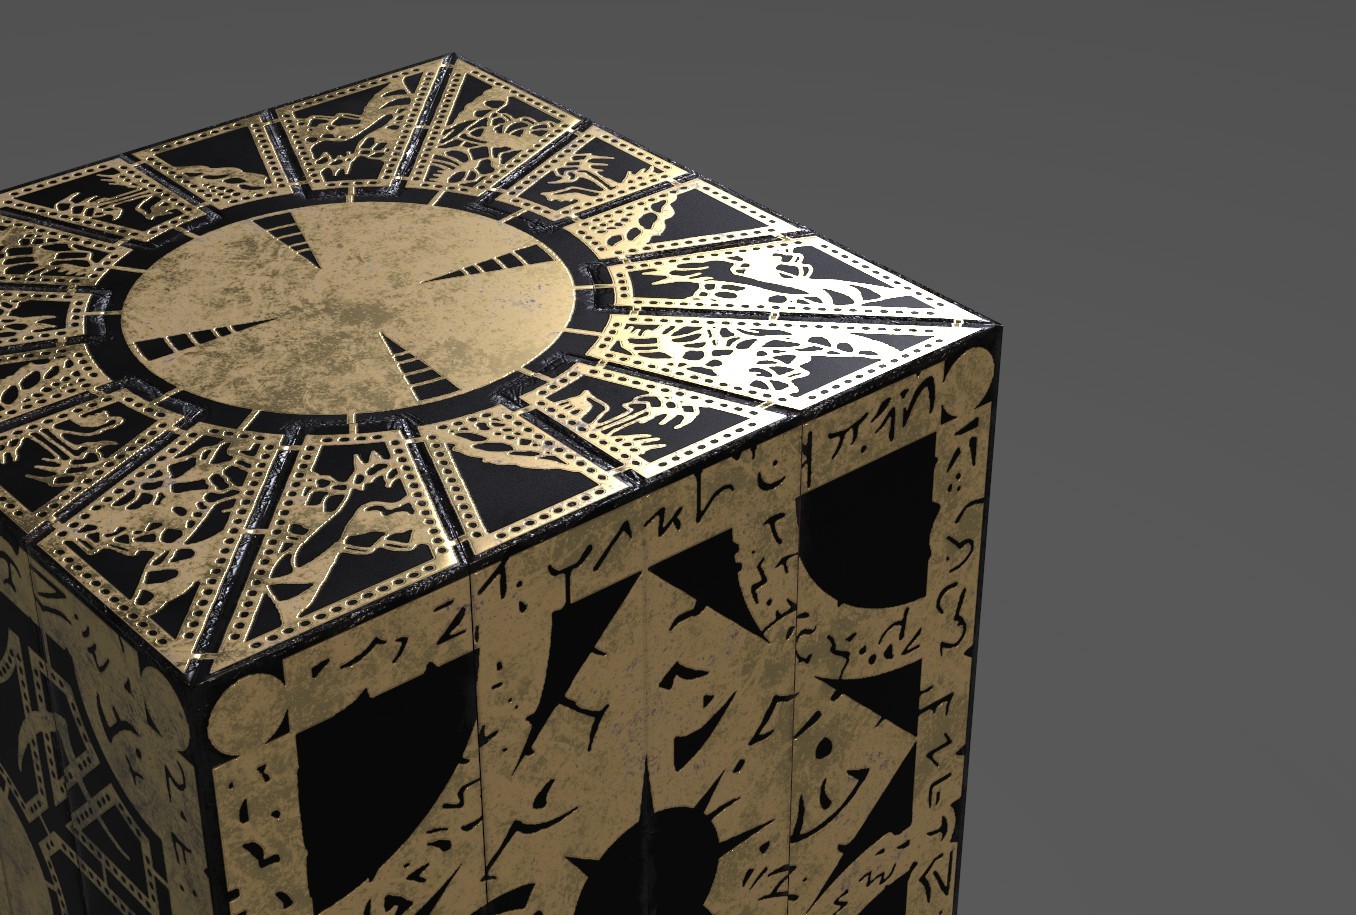 Hellraiser puzzle box lament configuration.